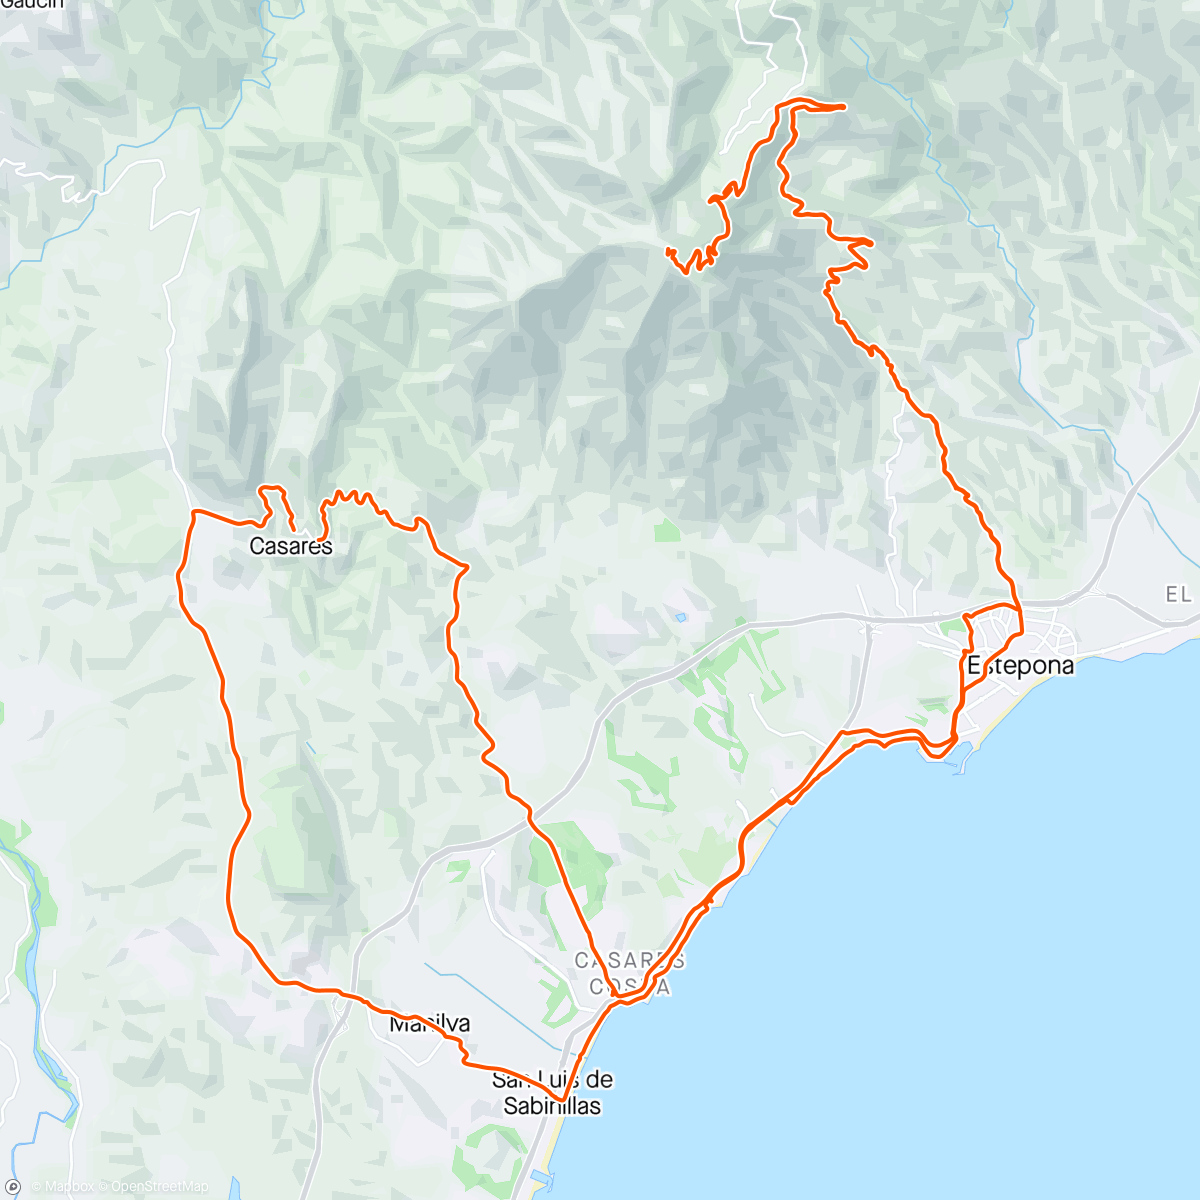 Mapa de la actividad, Casares-Manilva-Estepona-Peña’s Blancas-Los Reales